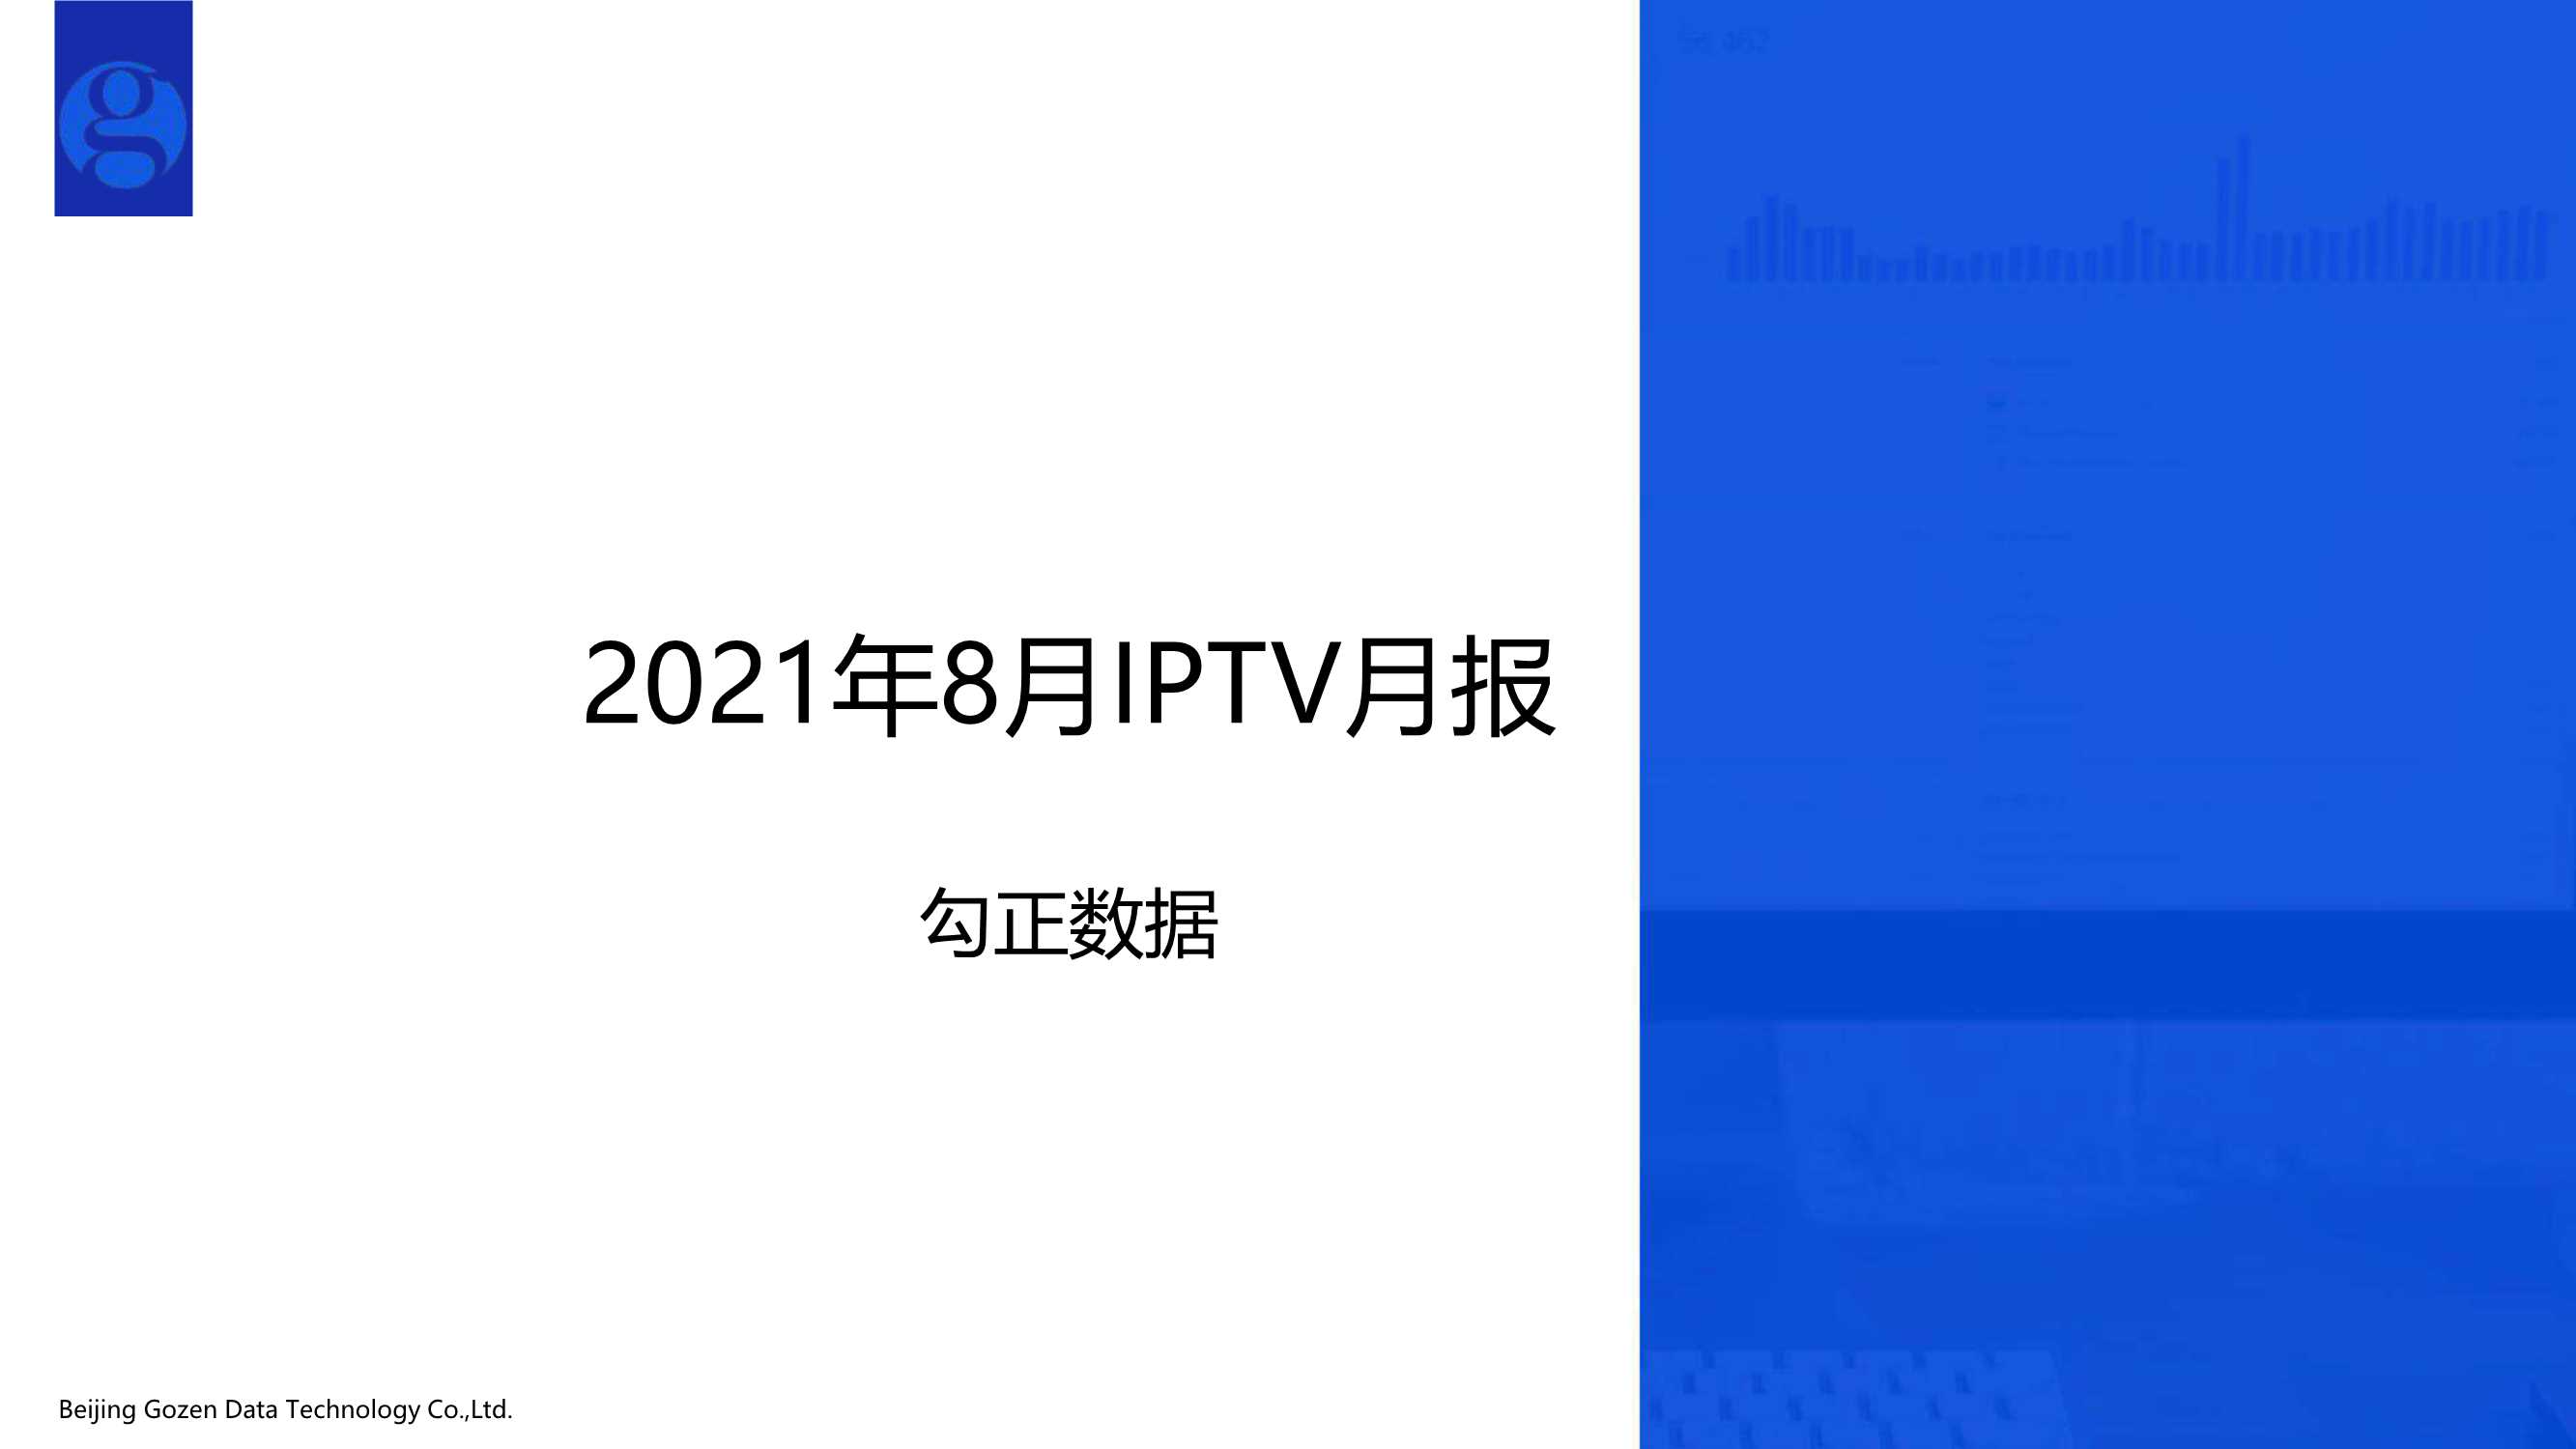 勾正数据-2021年8月家庭智慧屏IPTV大数据报告-2021.09-15页